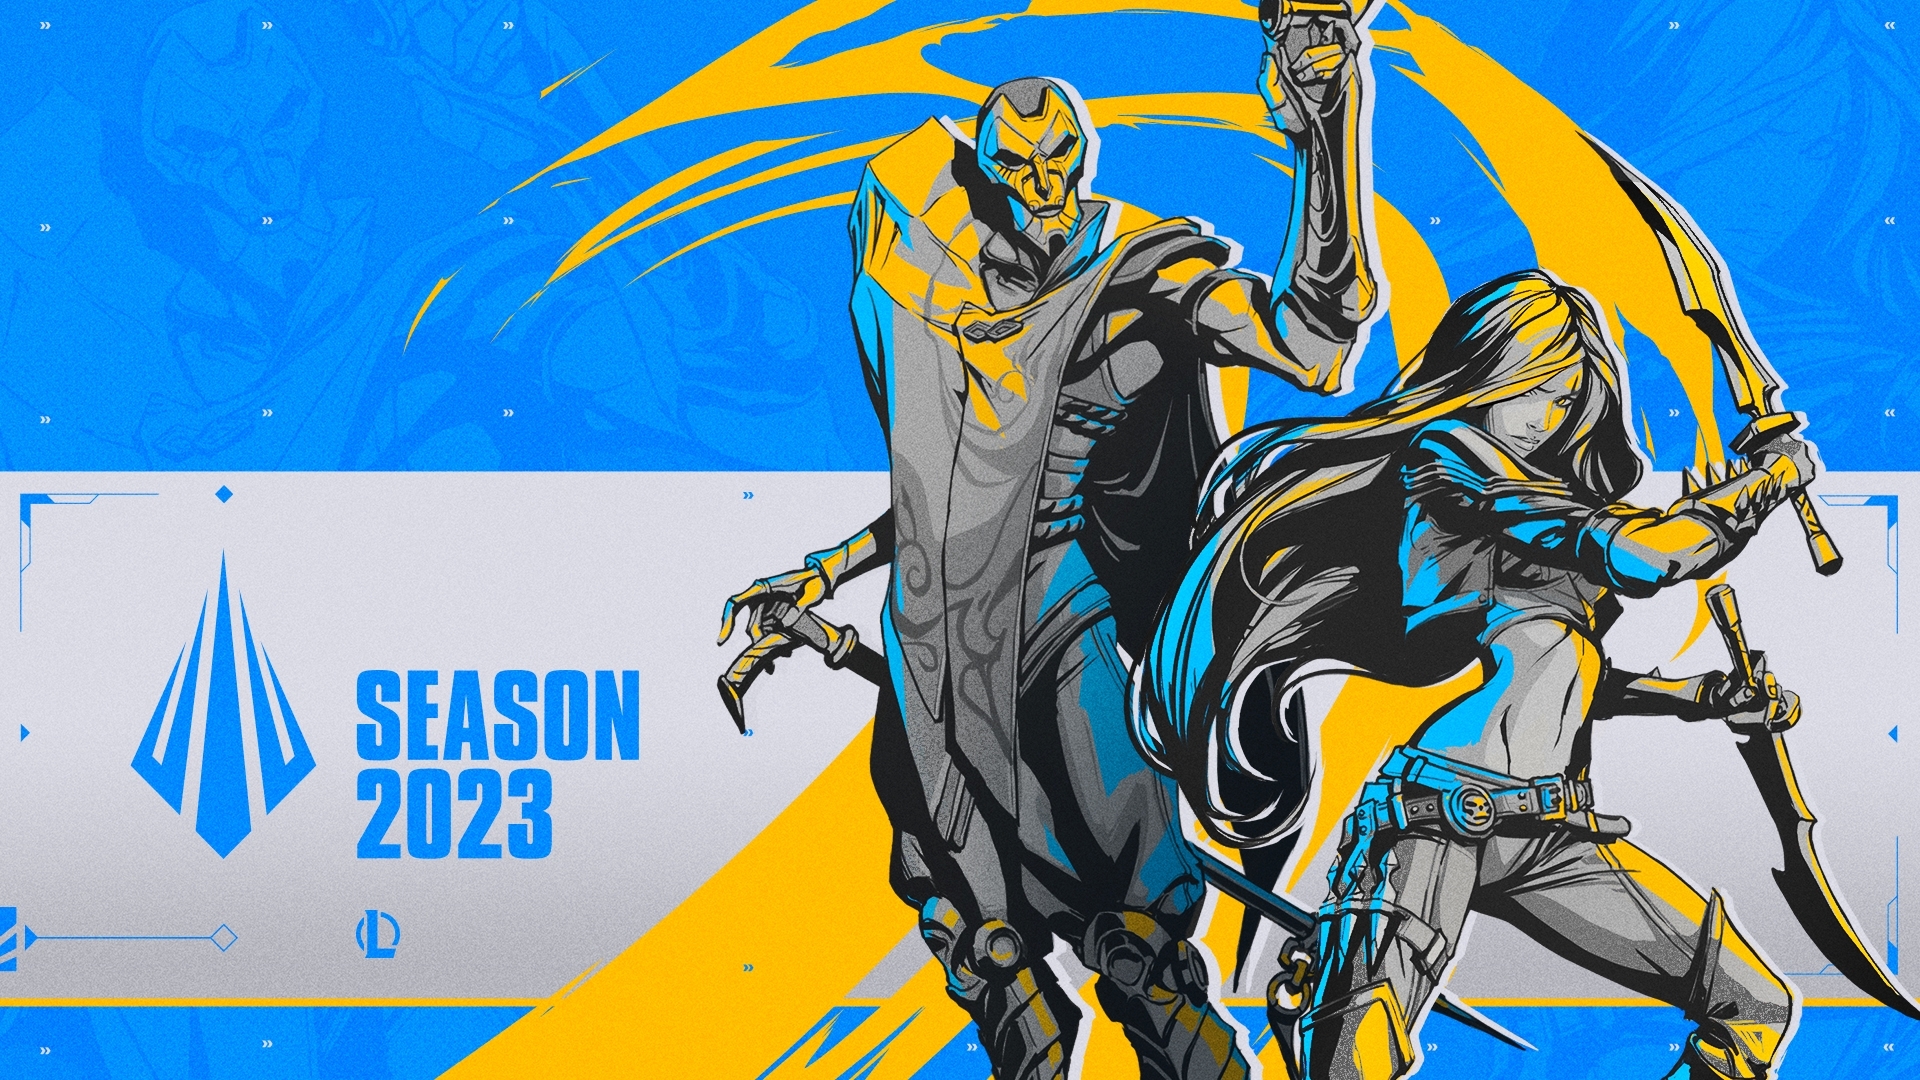 《英雄联盟》揭露 2023 赛季多项新内容 积分对战将拆成上、下季插图